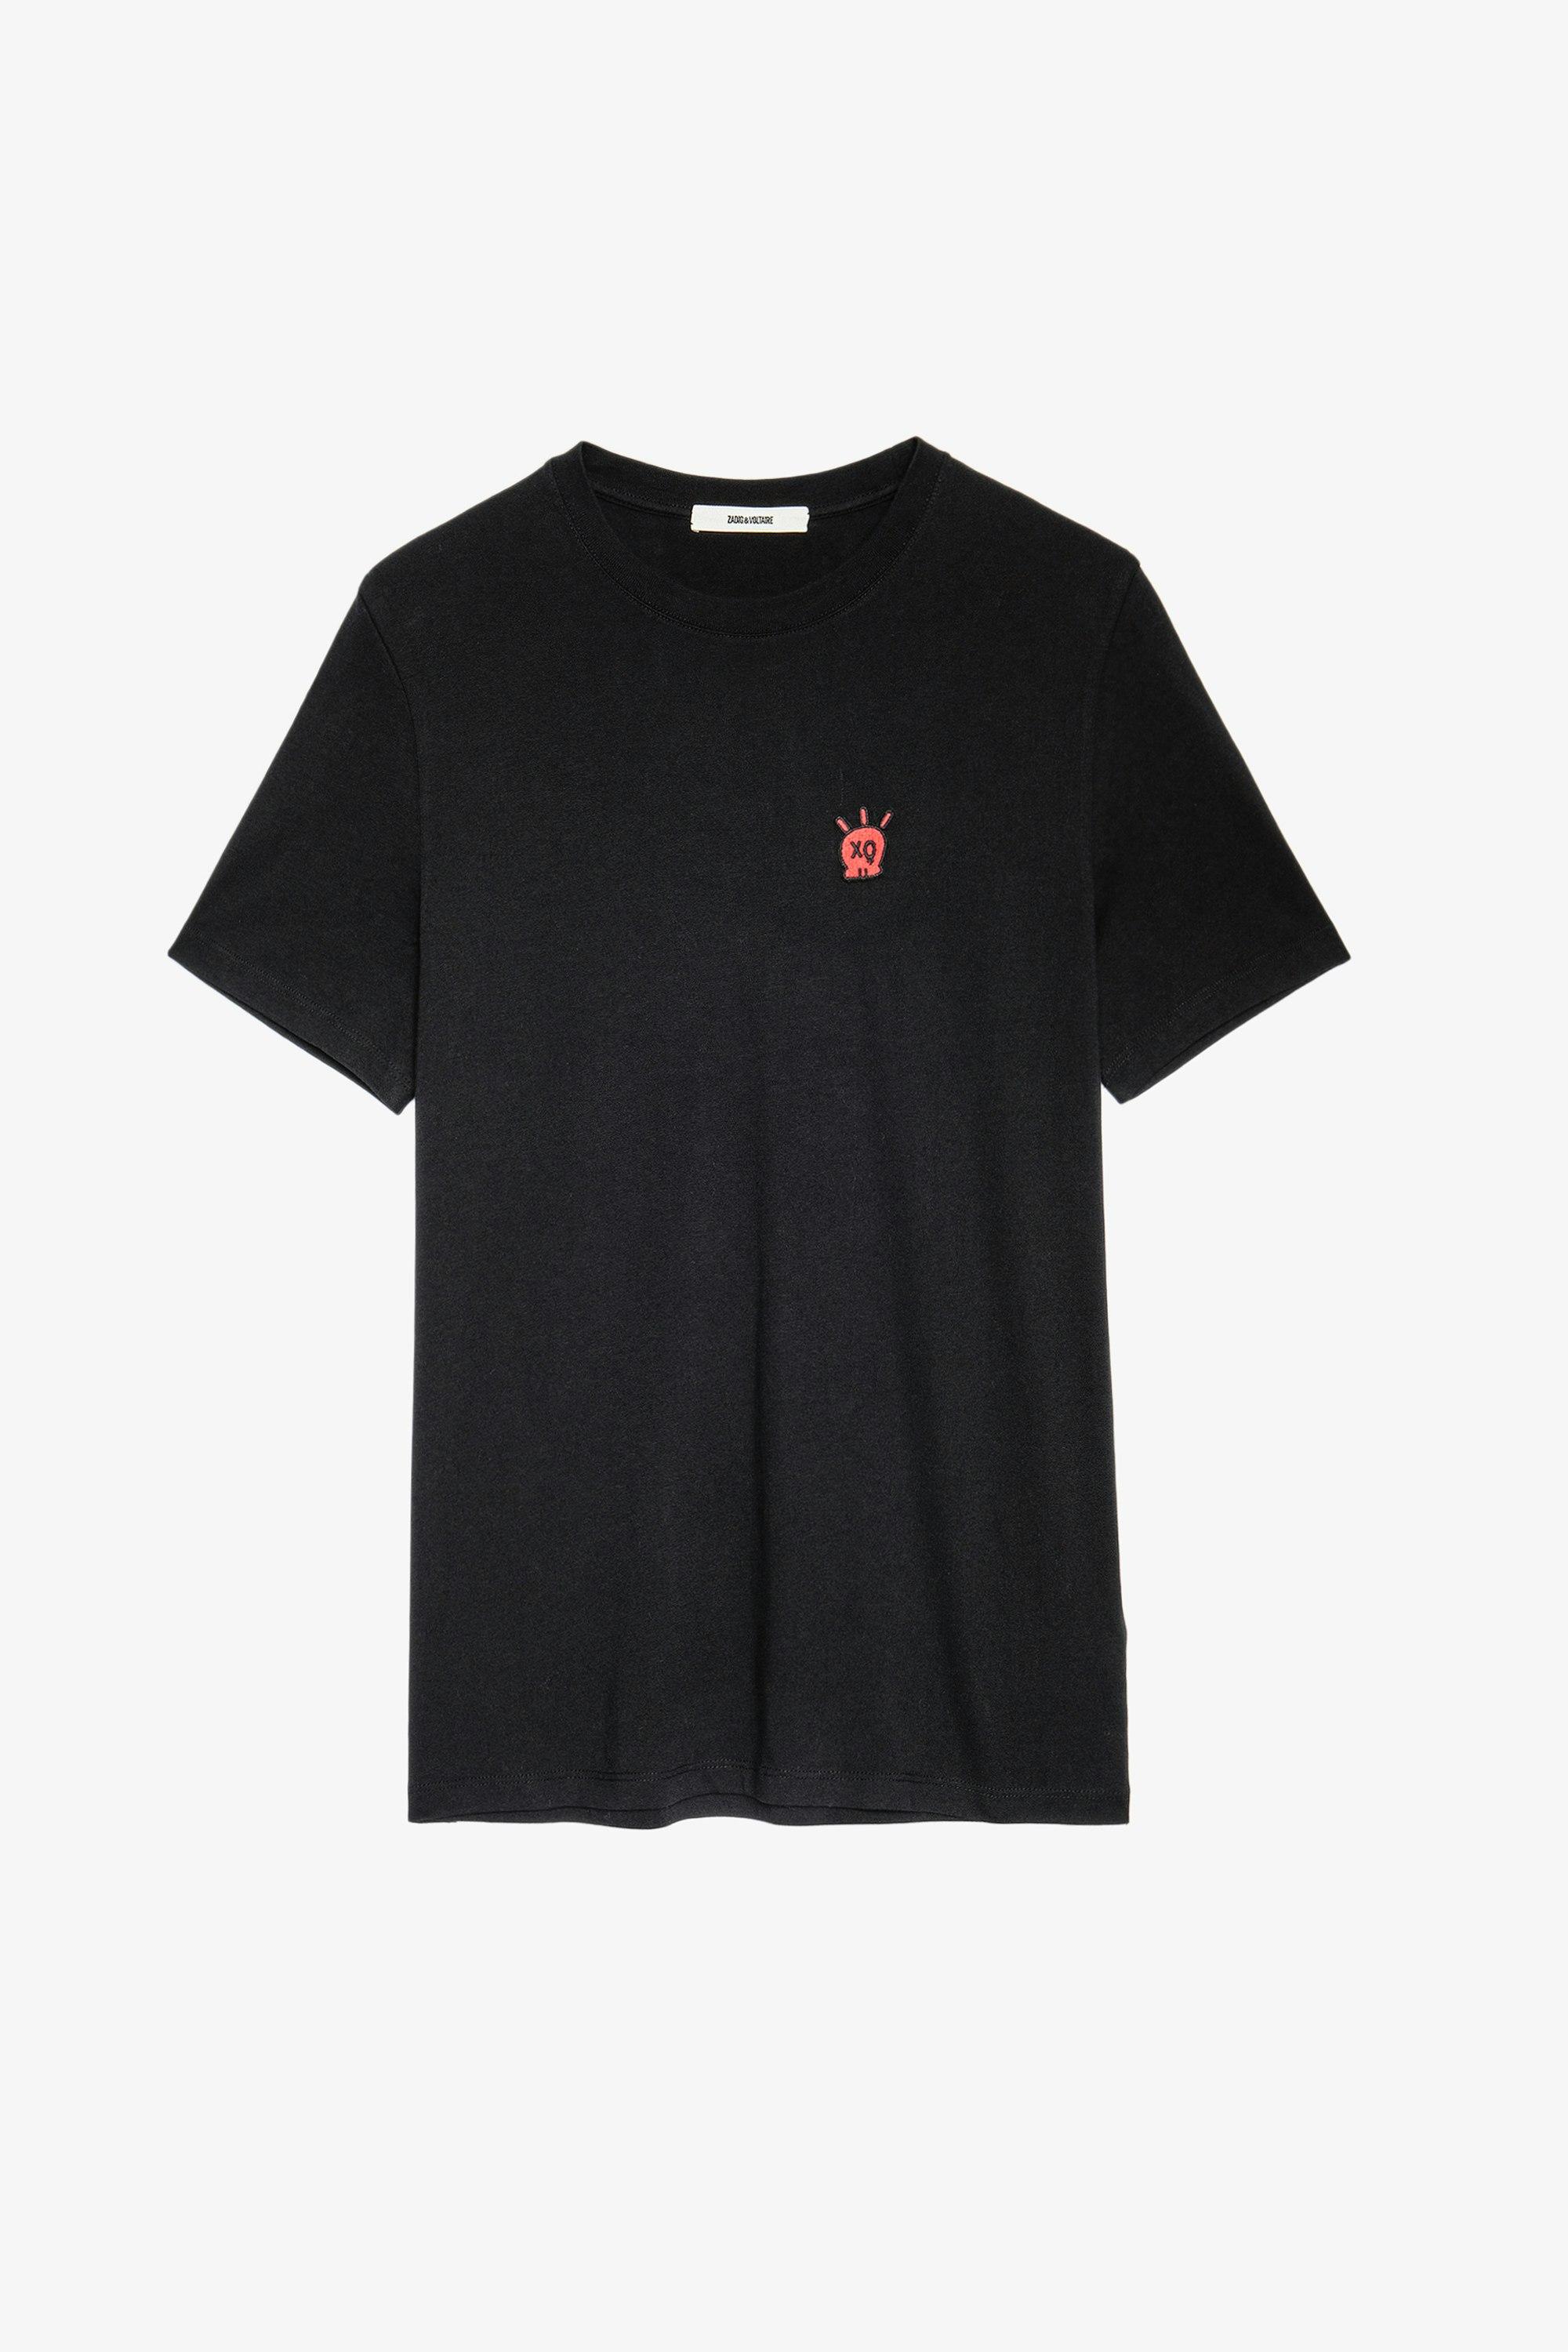 Camiseta Tommy Skull XO - Camiseta negra de algodón para hombre con parche de calavera XO en el pecho.